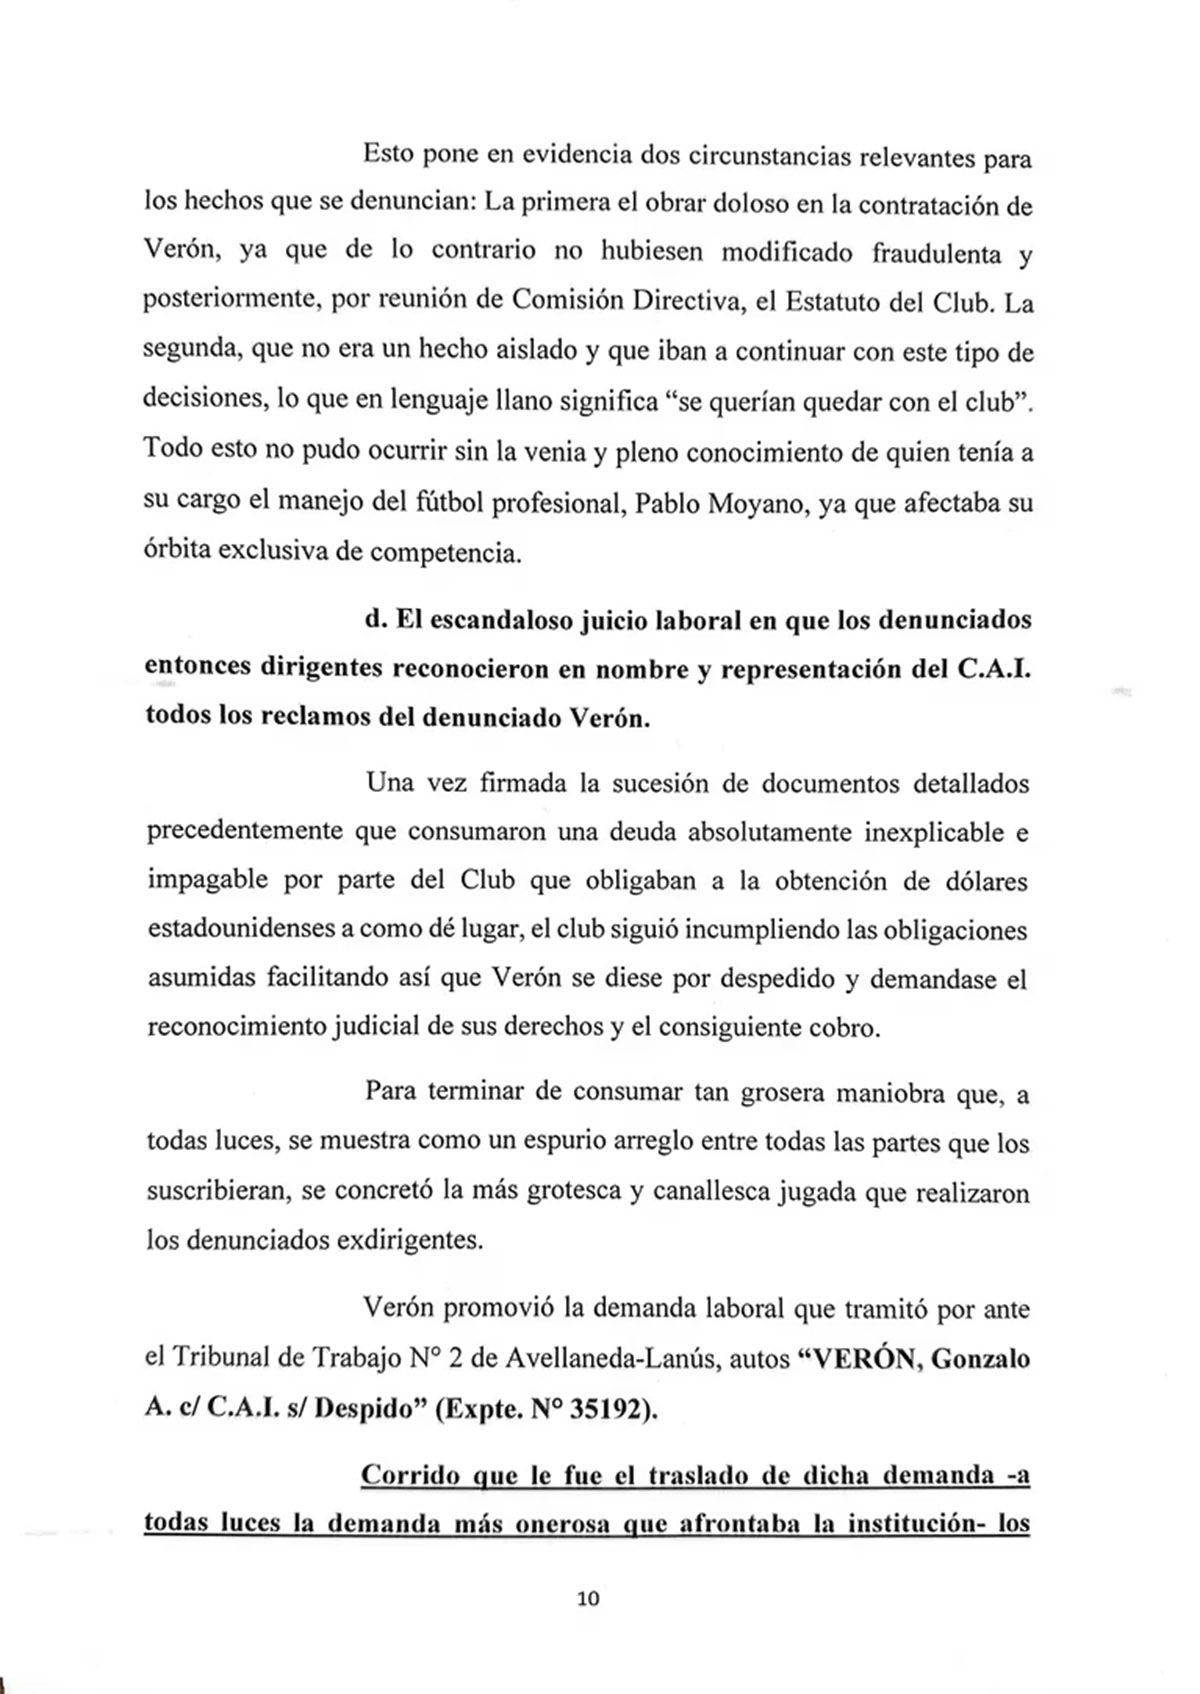 Fabián Doman, presidente de Independiente, denunció penalmente a Hugo Moyano por el juicio laboral que realizó Gonzalo Verón, por fraude y lavado de dinero.